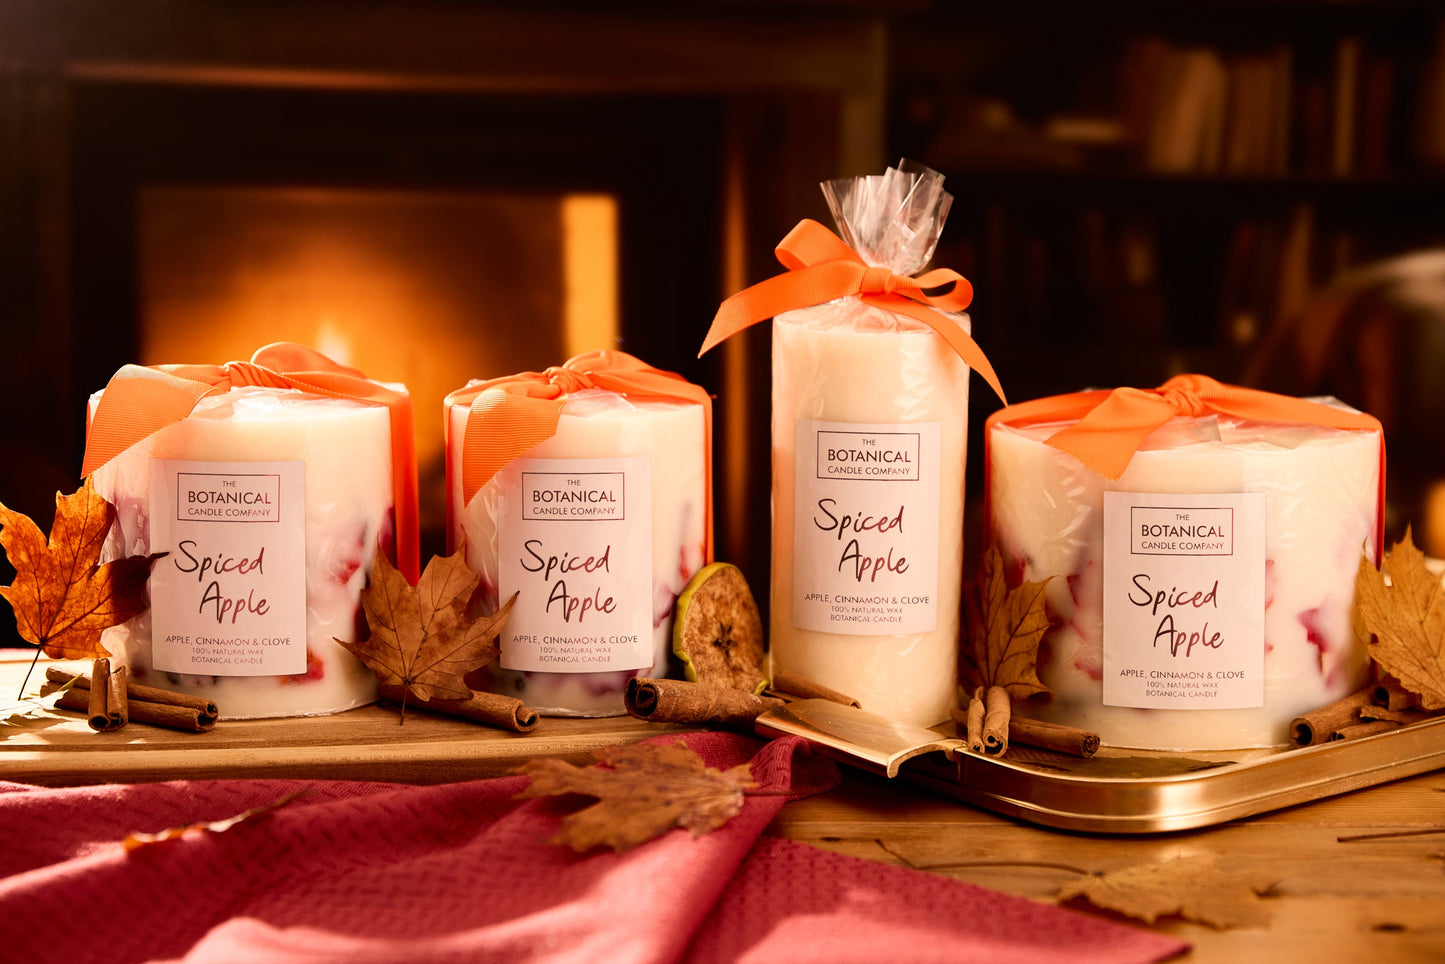 Spiced Apple Medium Luxury Botanical Candle - Apple, Cinnamon and Nutmeg